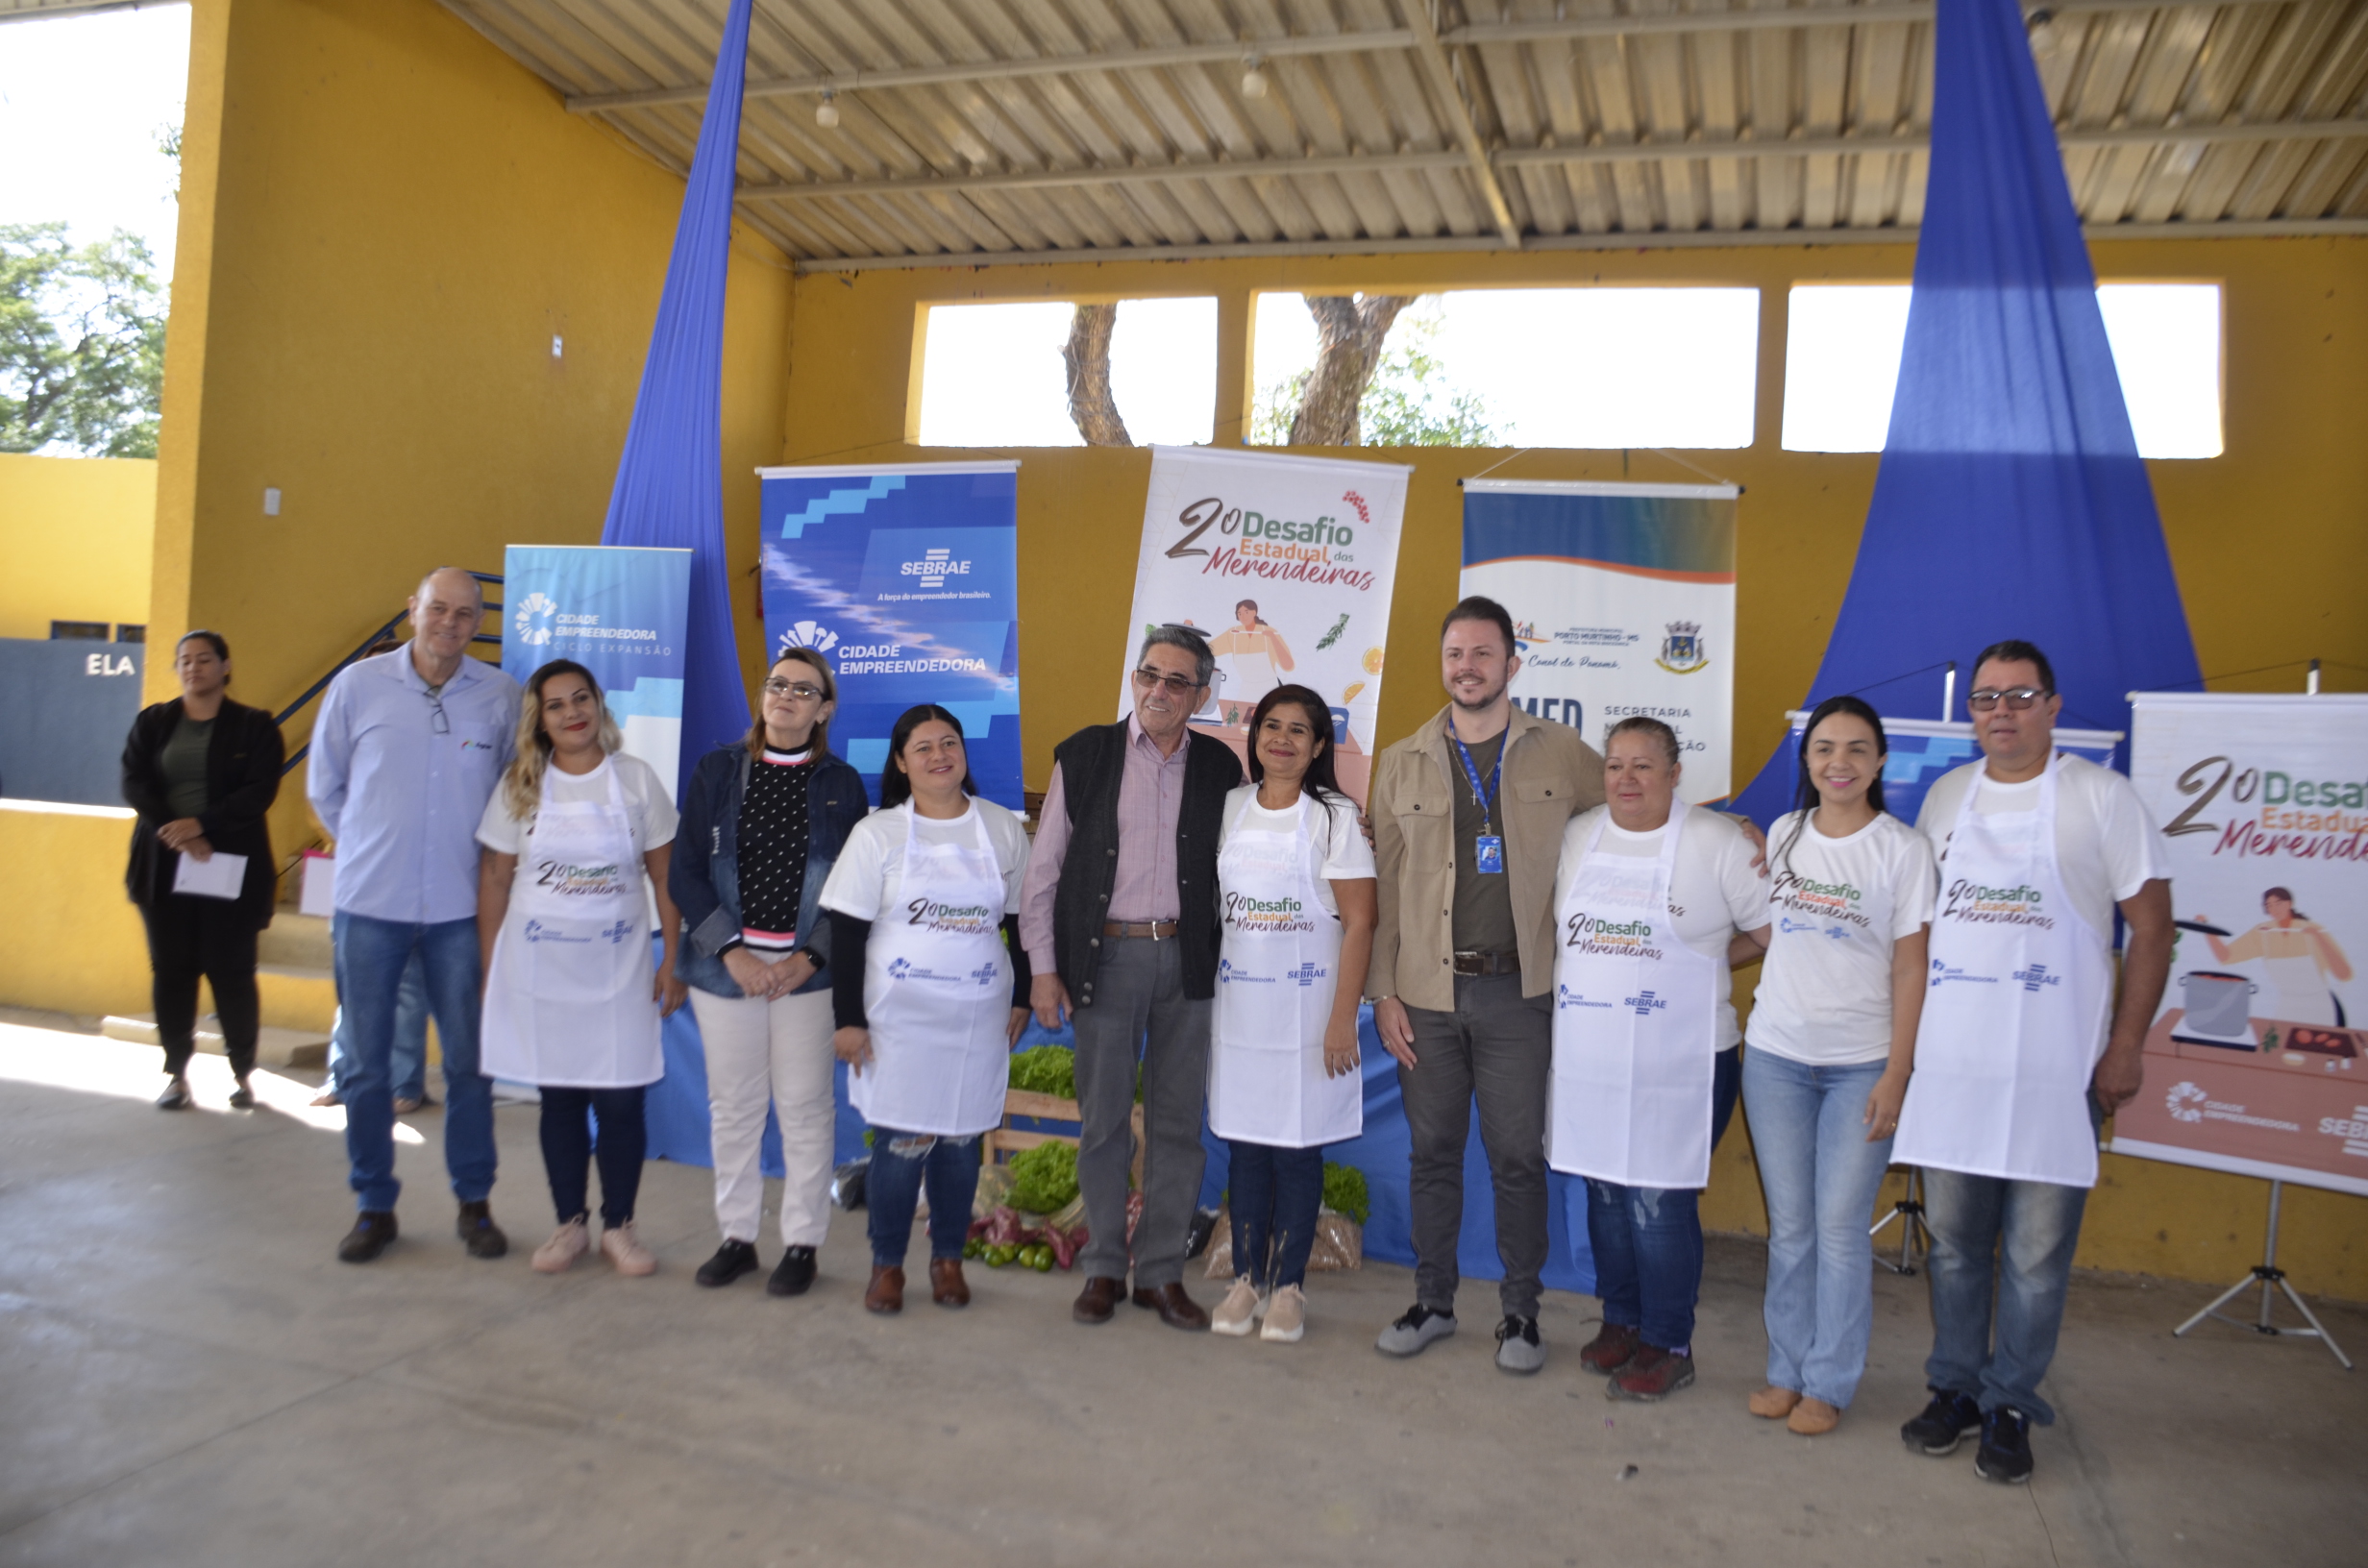 Prefeito Nelson Cintra abre 2ª Edição do ‘Desafio Estadual das Merendeiras’ em Porto Murtinho